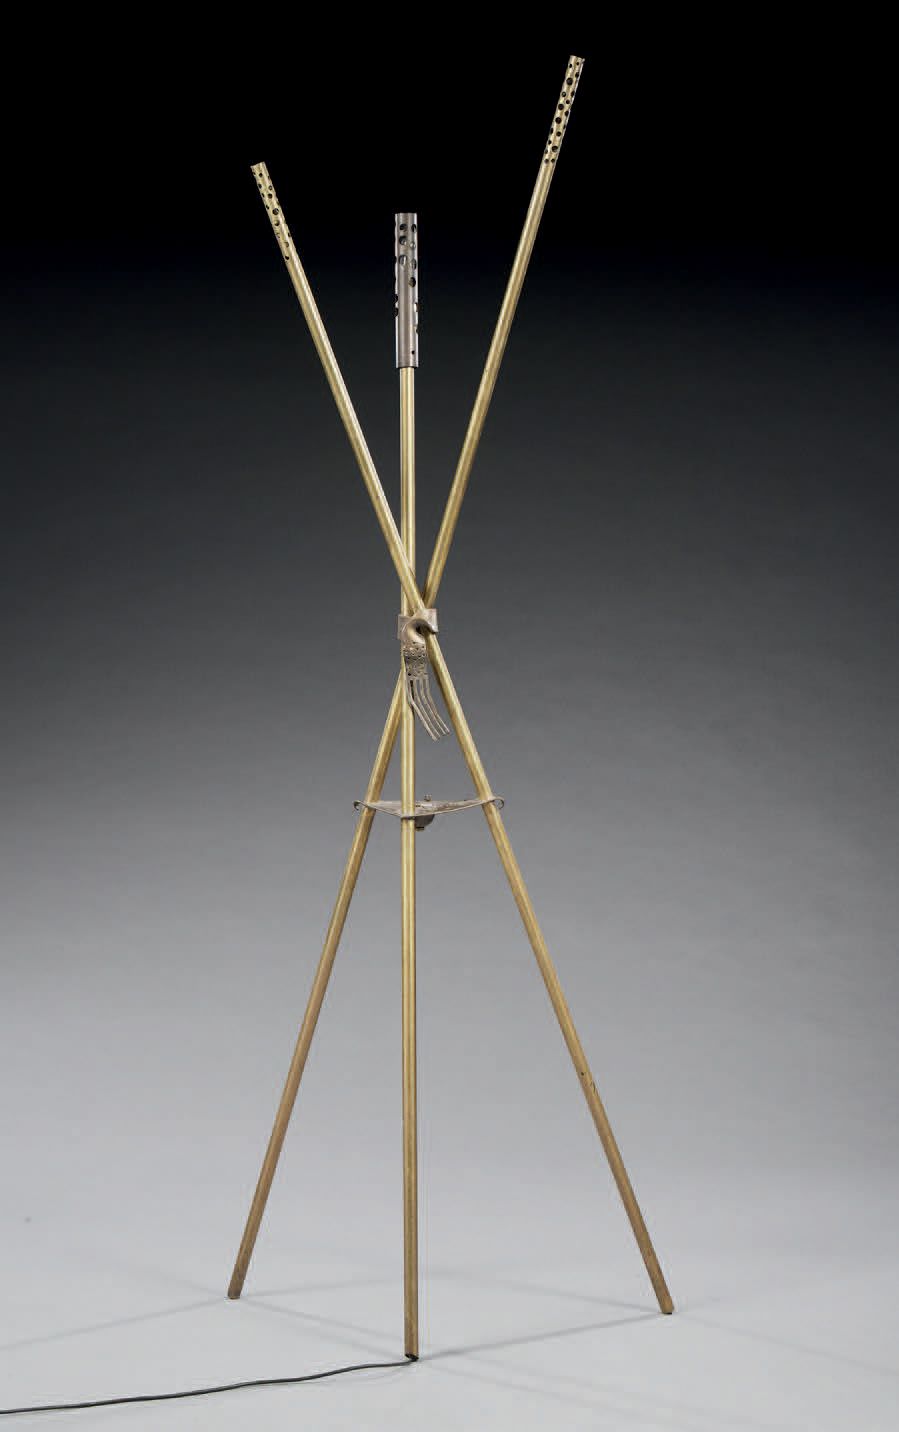 MICHEL KIRILIUK (né en 1952) 
落地灯，铜制，
签名为 "Kiriliuk"。
大约1990年
高：185厘米